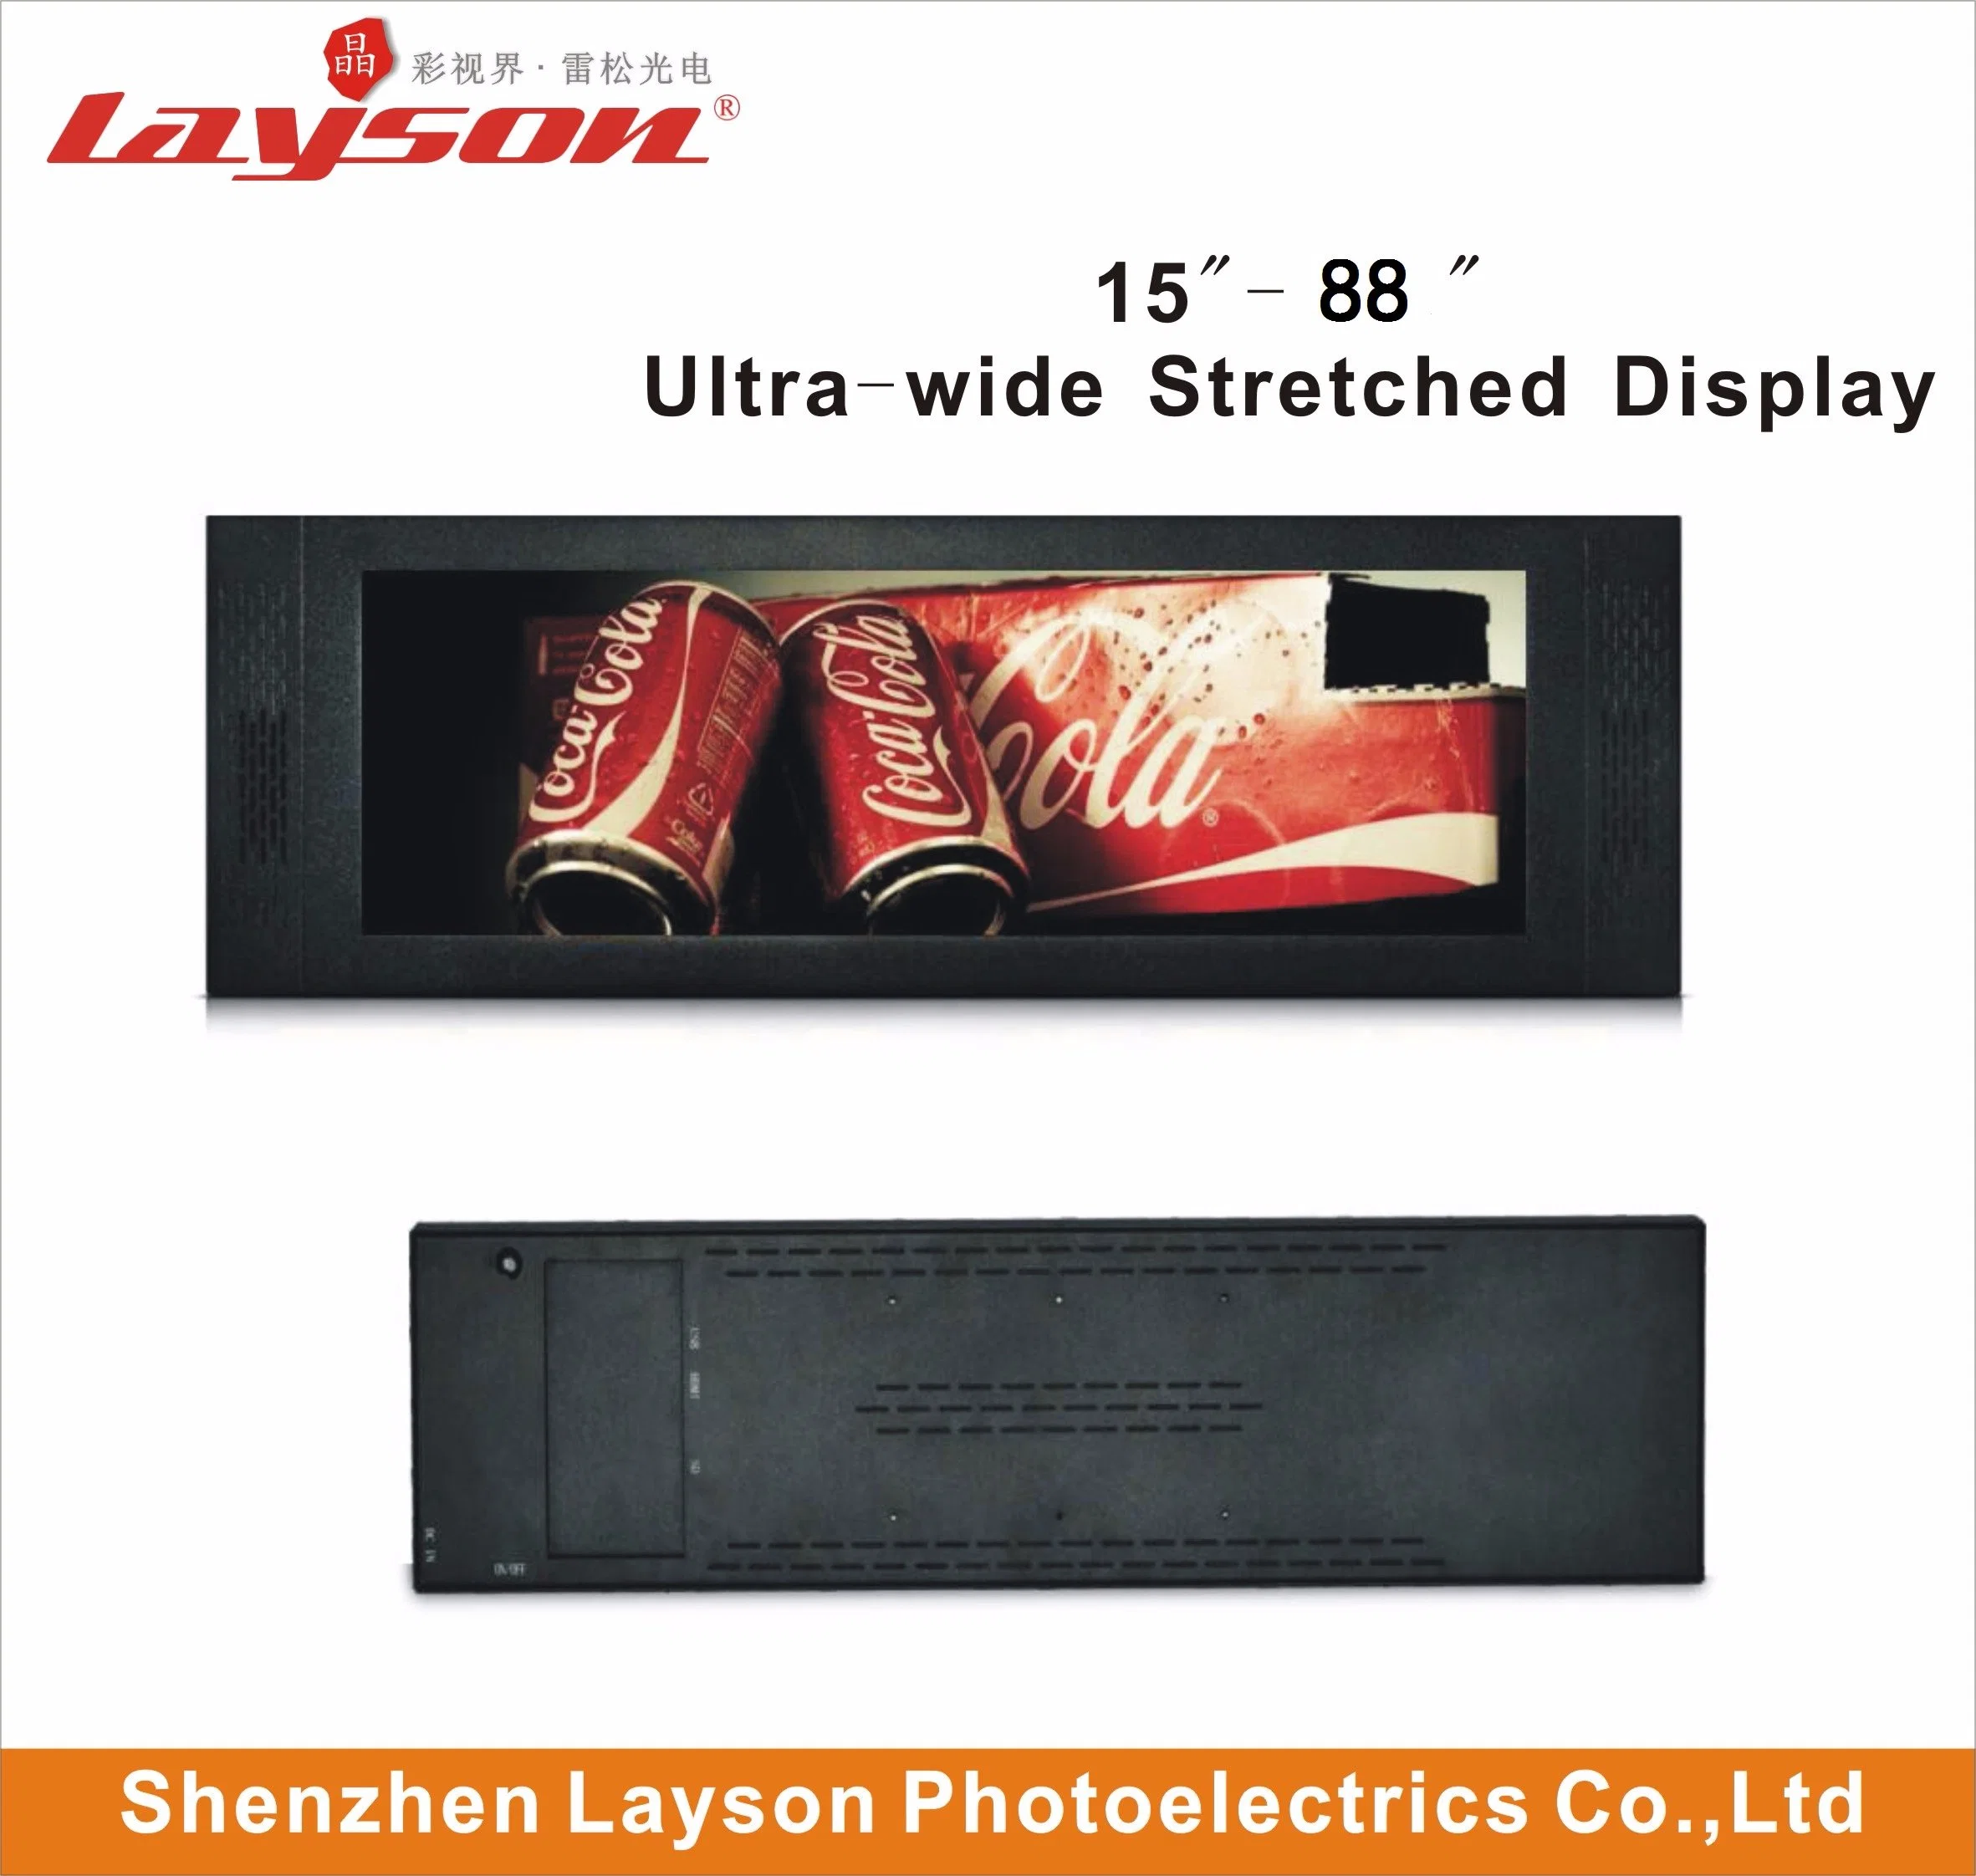 Ecran panneau LCD 28 pouces à barre ultra-large et étirée Multimédia Ad Player réseau Wi-Fi signalisation numérique moniteur LED couleur Lecteur multimédia publicitaire